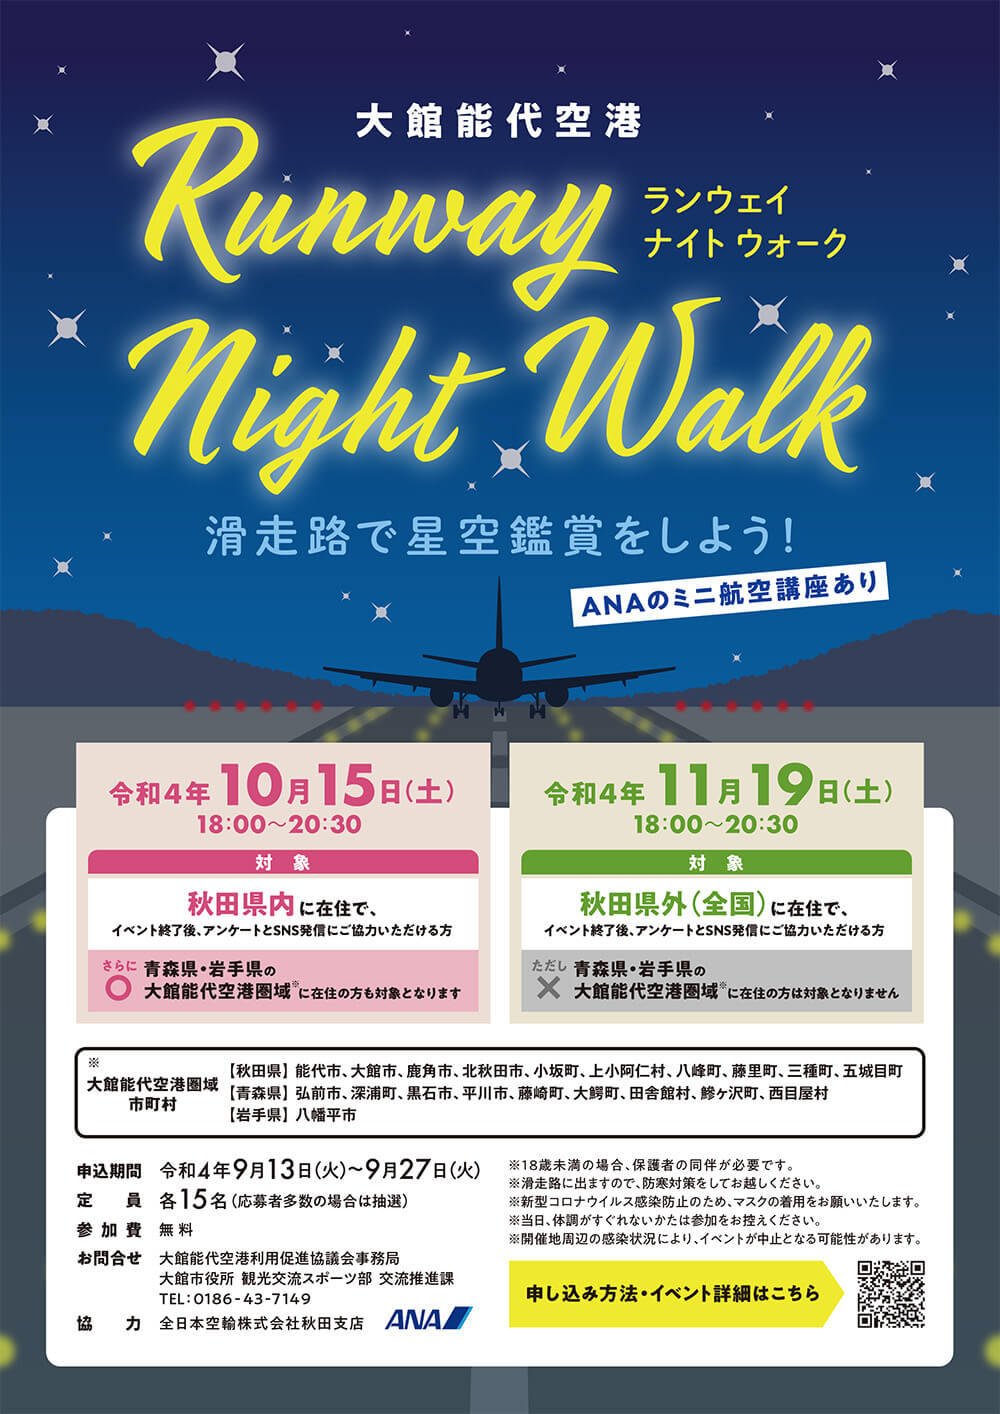 Runway Night Walk　滑走路で星空観賞をしよう！